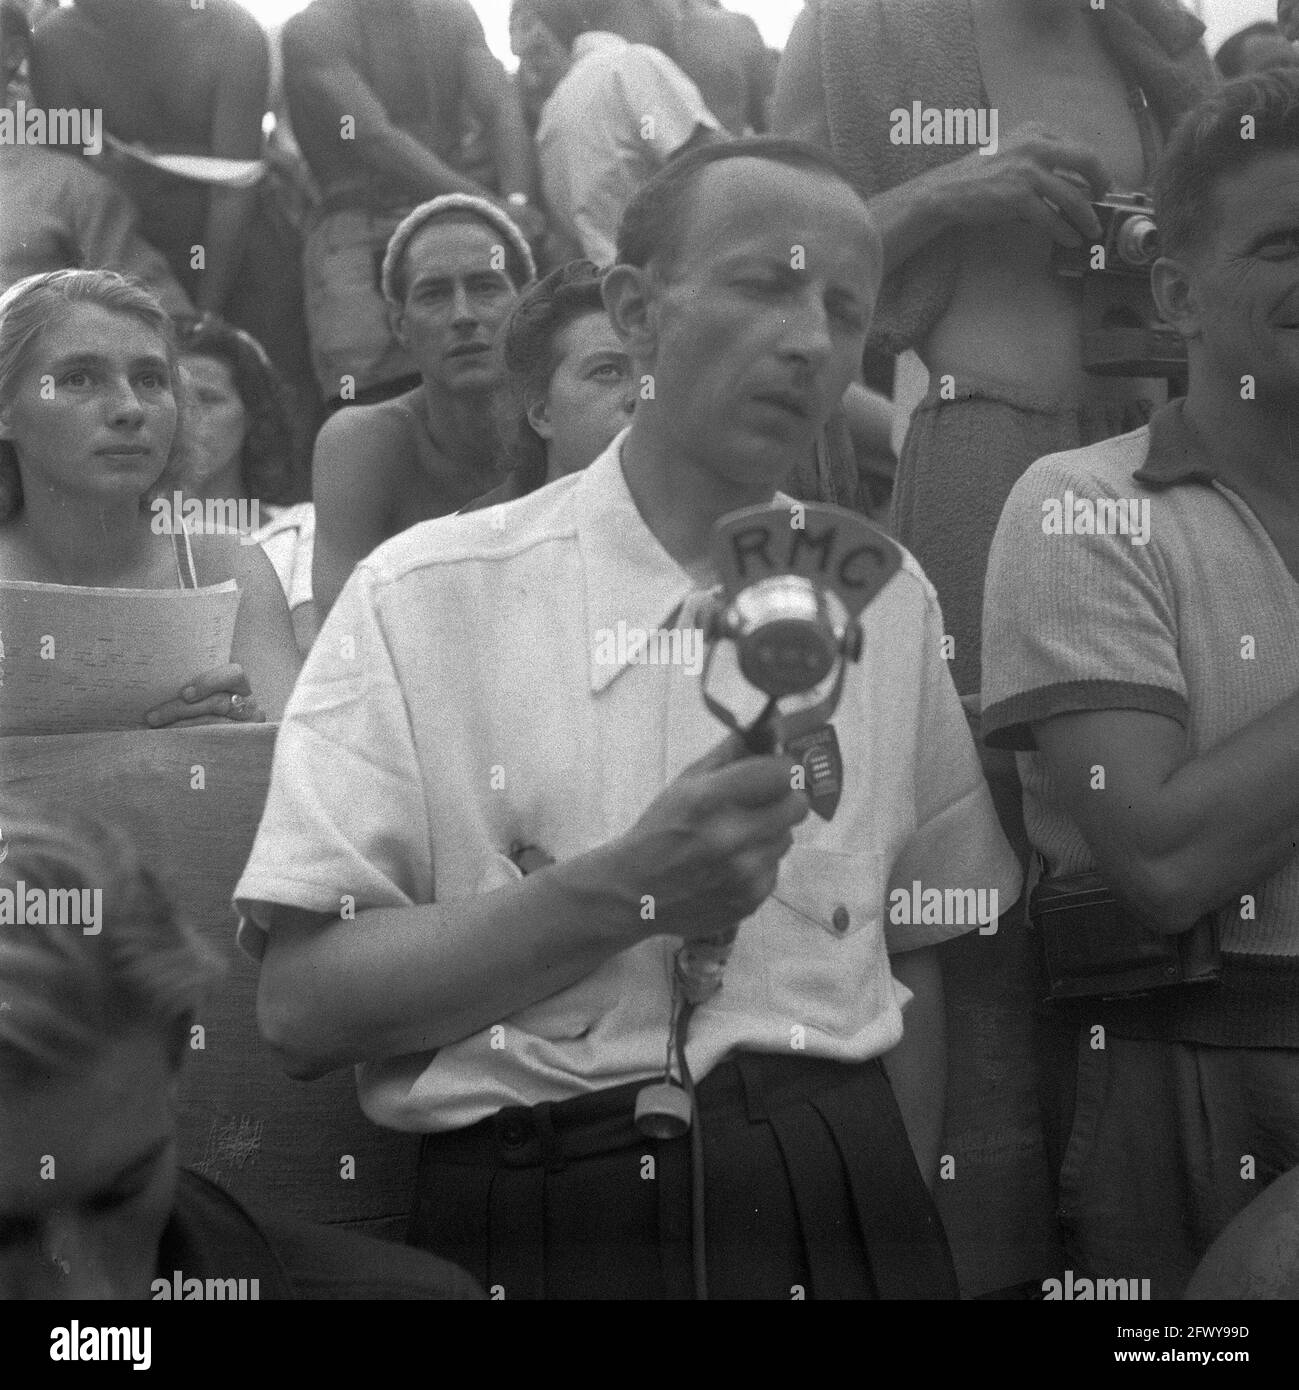 Radio reporter in pubblico, 10 settembre 1947, campionati di nuoto, nuoto, I Paesi Bassi, foto agenzia stampa del XX secolo, notizie da ricordare, Foto Stock